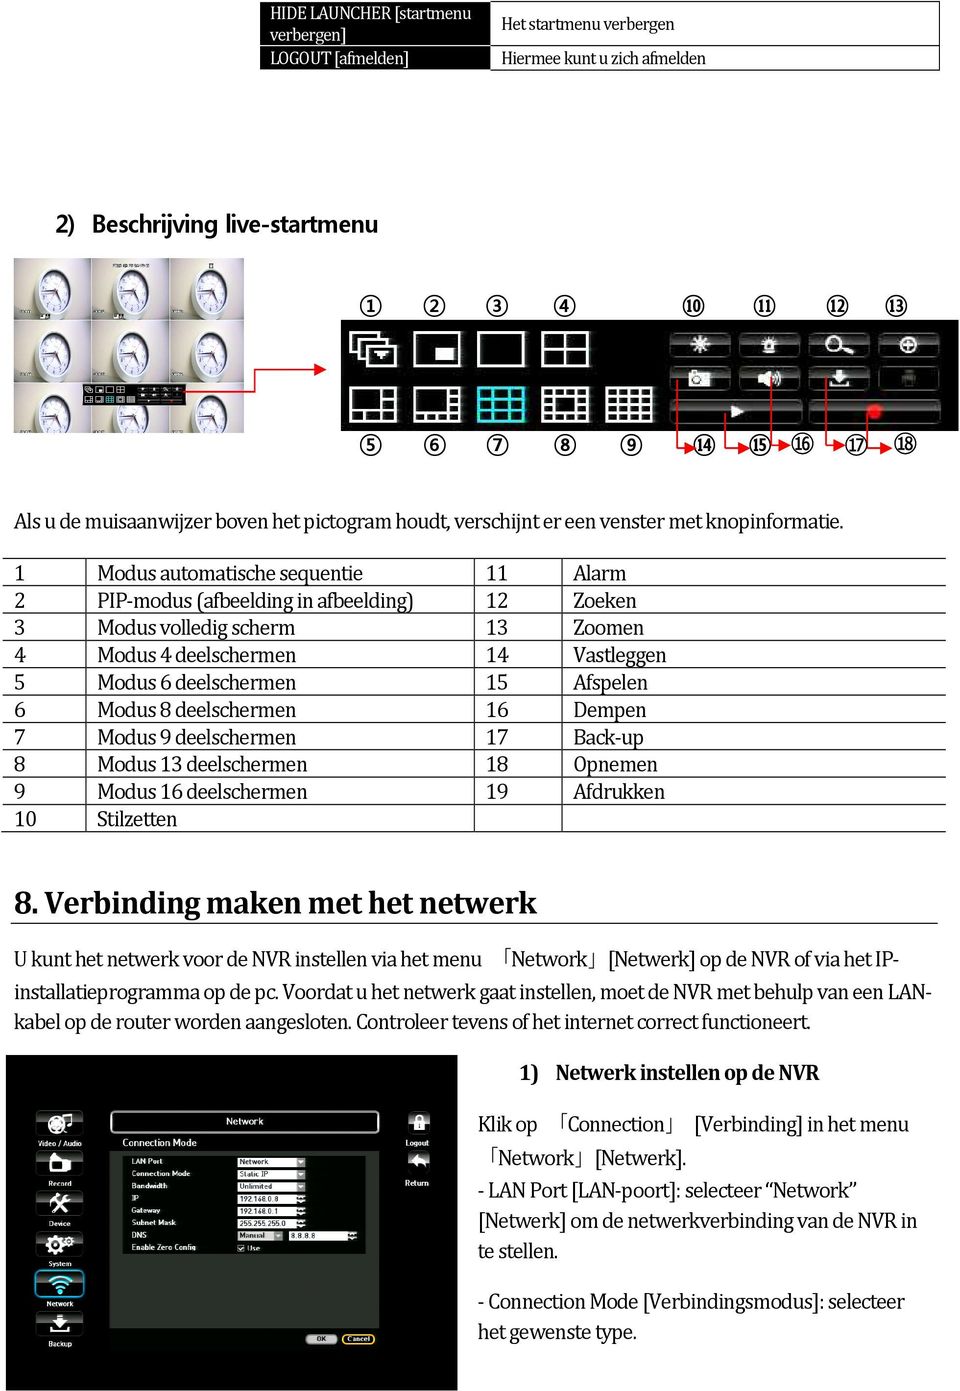 1 Modus automatische sequentie 11 Alarm 2 PIP-modus (afbeelding in afbeelding) 12 Zoeken 3 Modus volledig scherm 13 Zoomen 4 Modus 4 deelschermen 14 Vastleggen 5 Modus 6 deelschermen 15 Afspelen 6